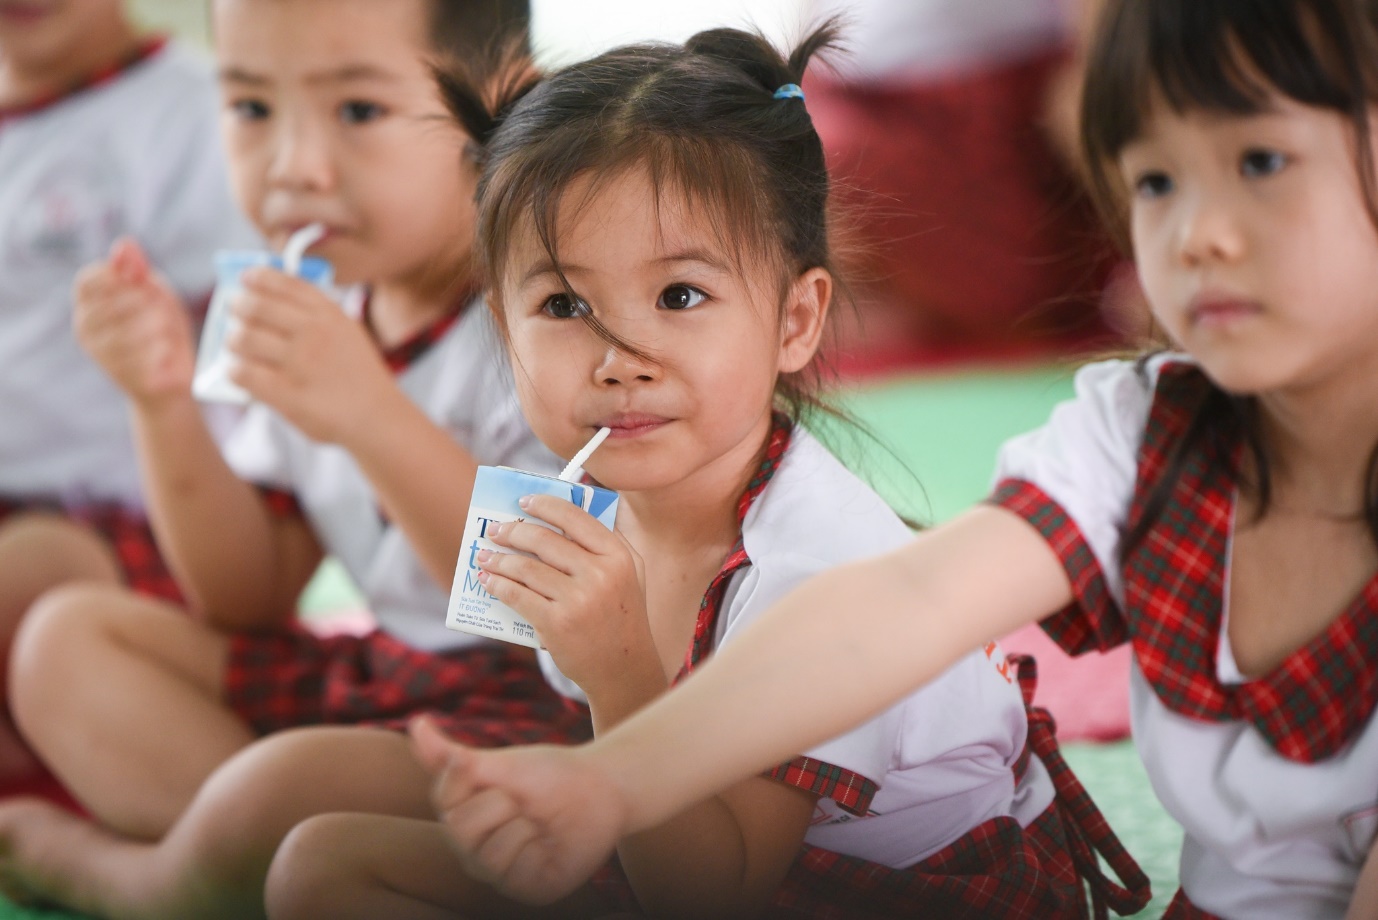 Tập đoàn TH tiên phong đồng hành cùng chương trình Sức khỏe học đường 2021-2025 - Ảnh 2.